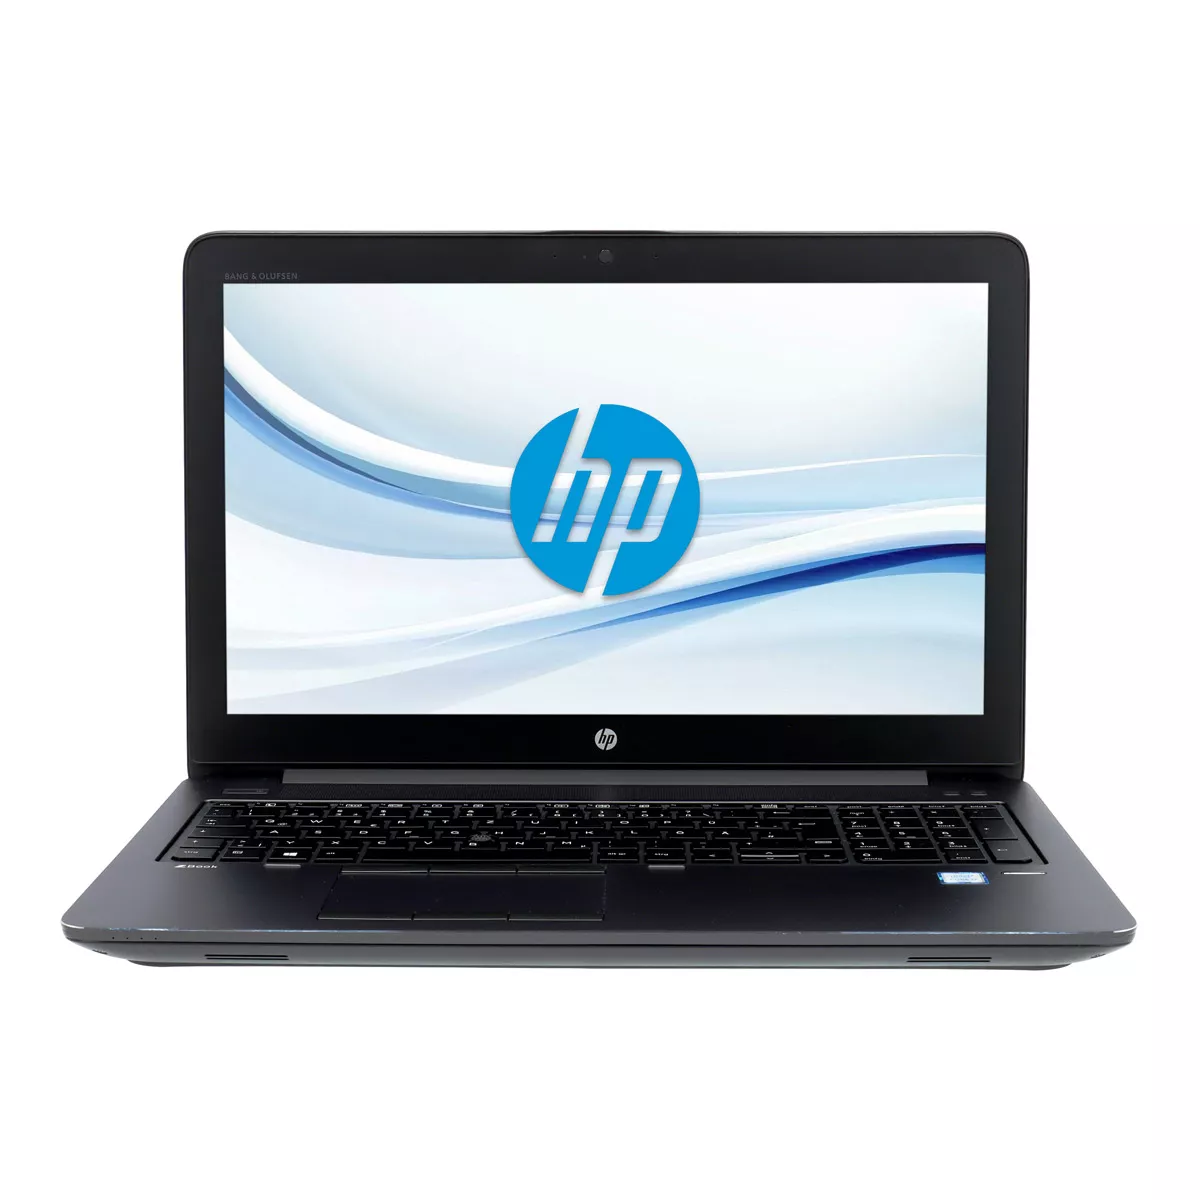 HP ZBook 15 G4 Core i7 7820HQ nVidia Quadro M1200M Full-HD 240 GB M.2 SSD Webcam A